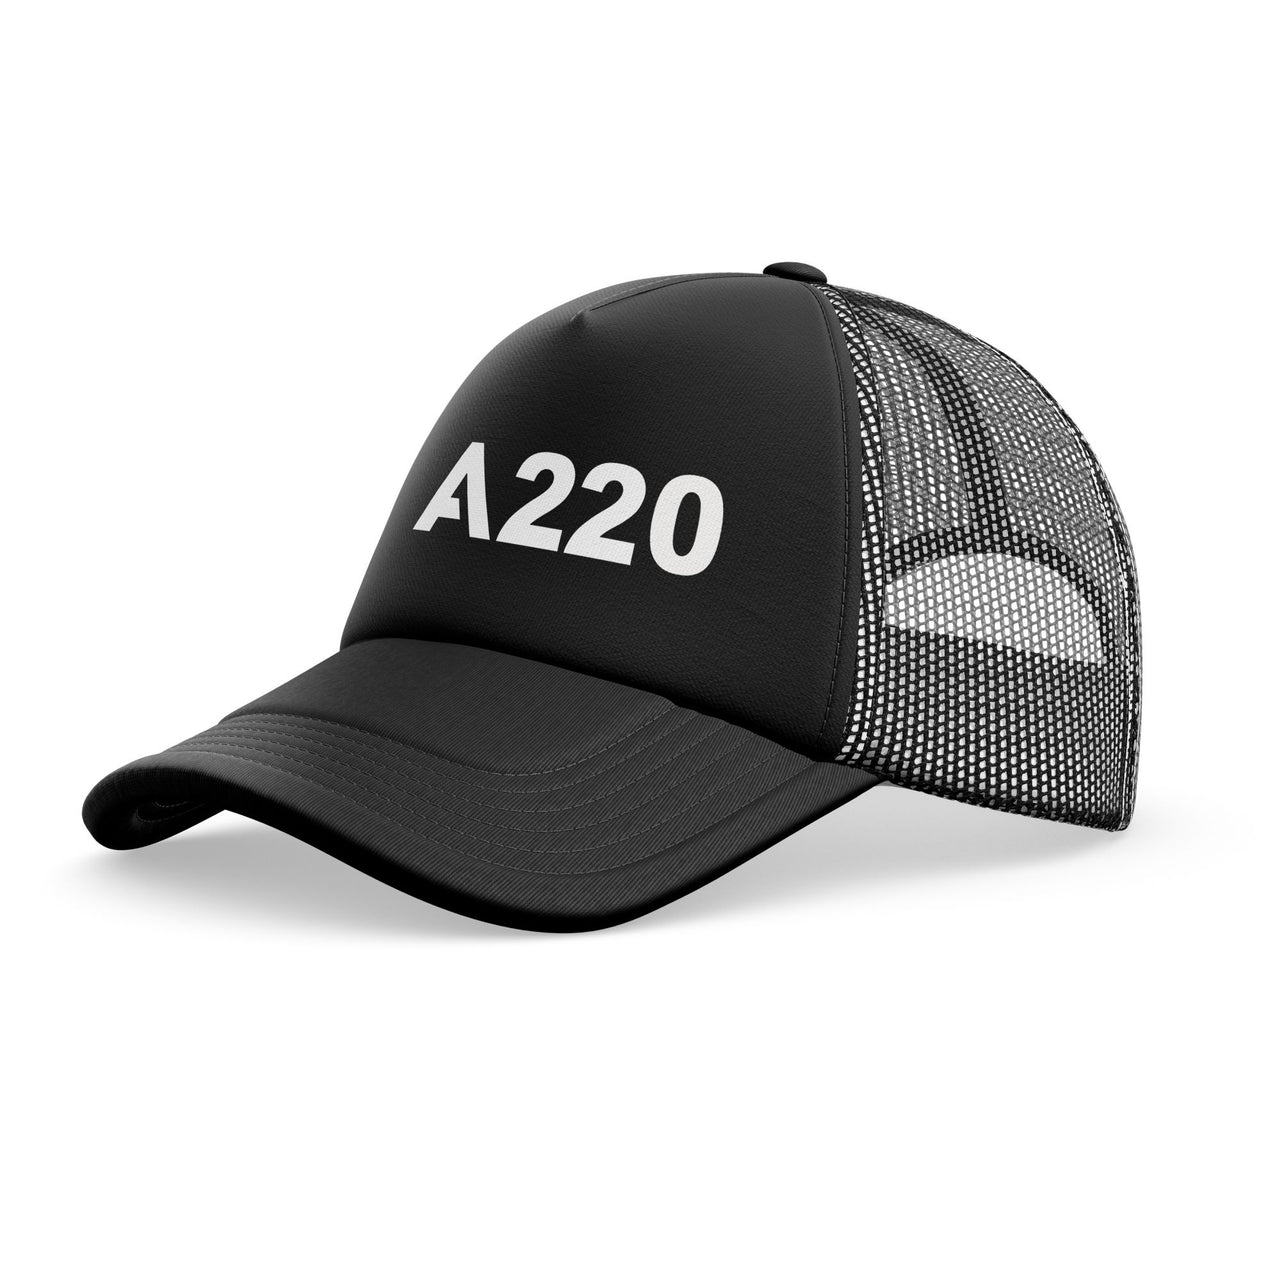 A220 Flat Text Designed Trucker Caps & Hats